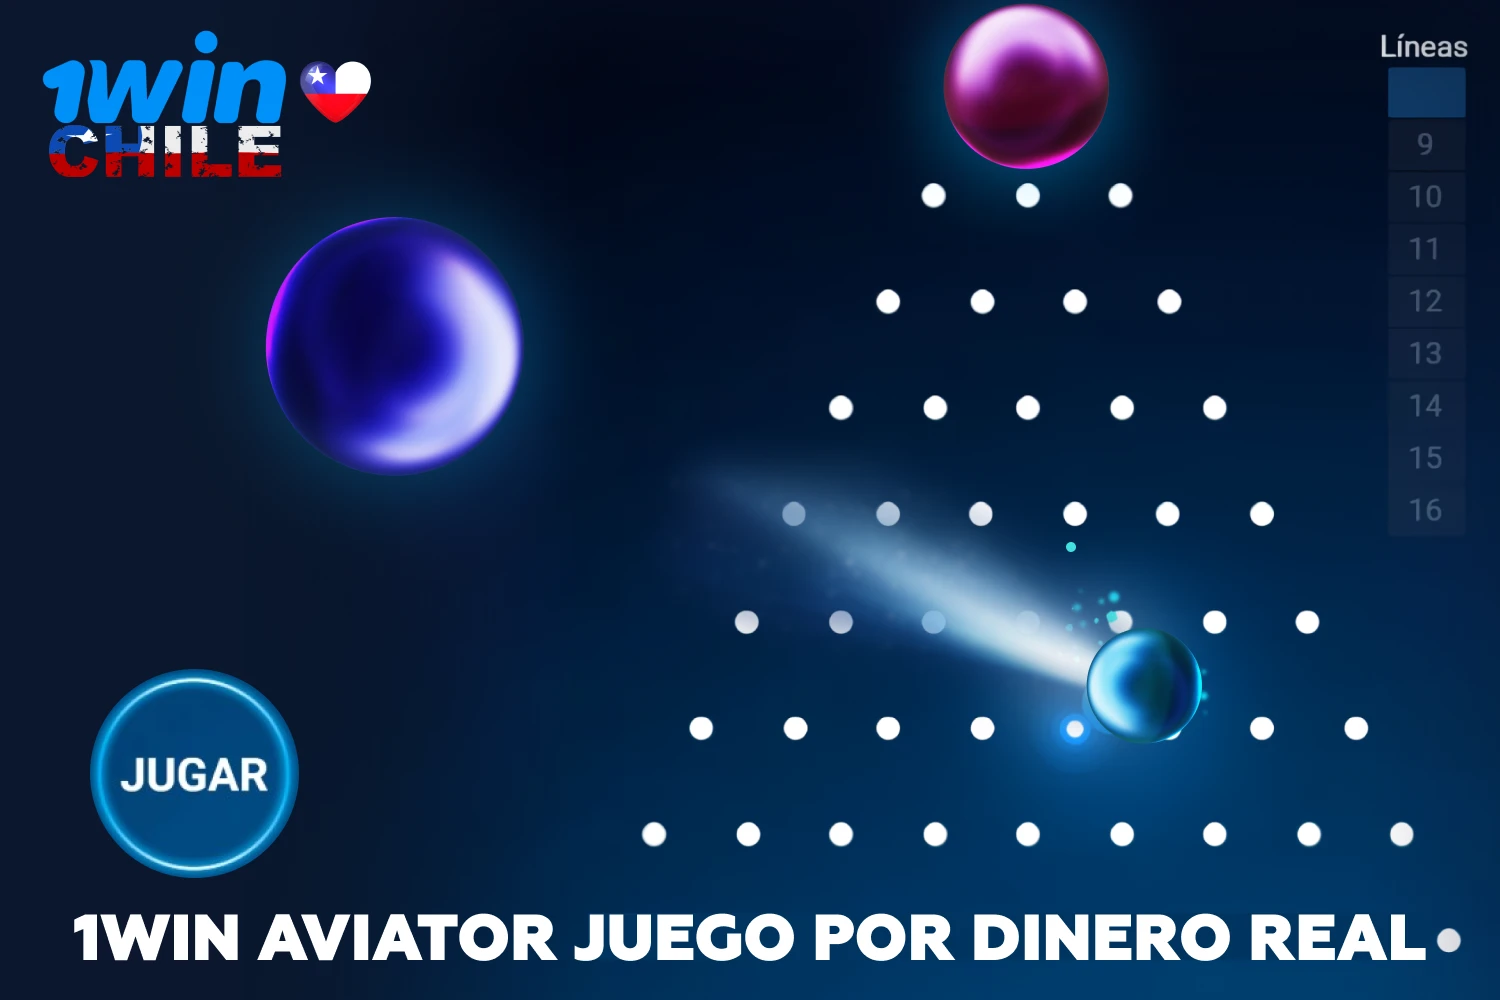 Entre los jugadores de Chile, muchos prefieren Plinko 1win por su emocionante modo de juego y sus sencillas reglas